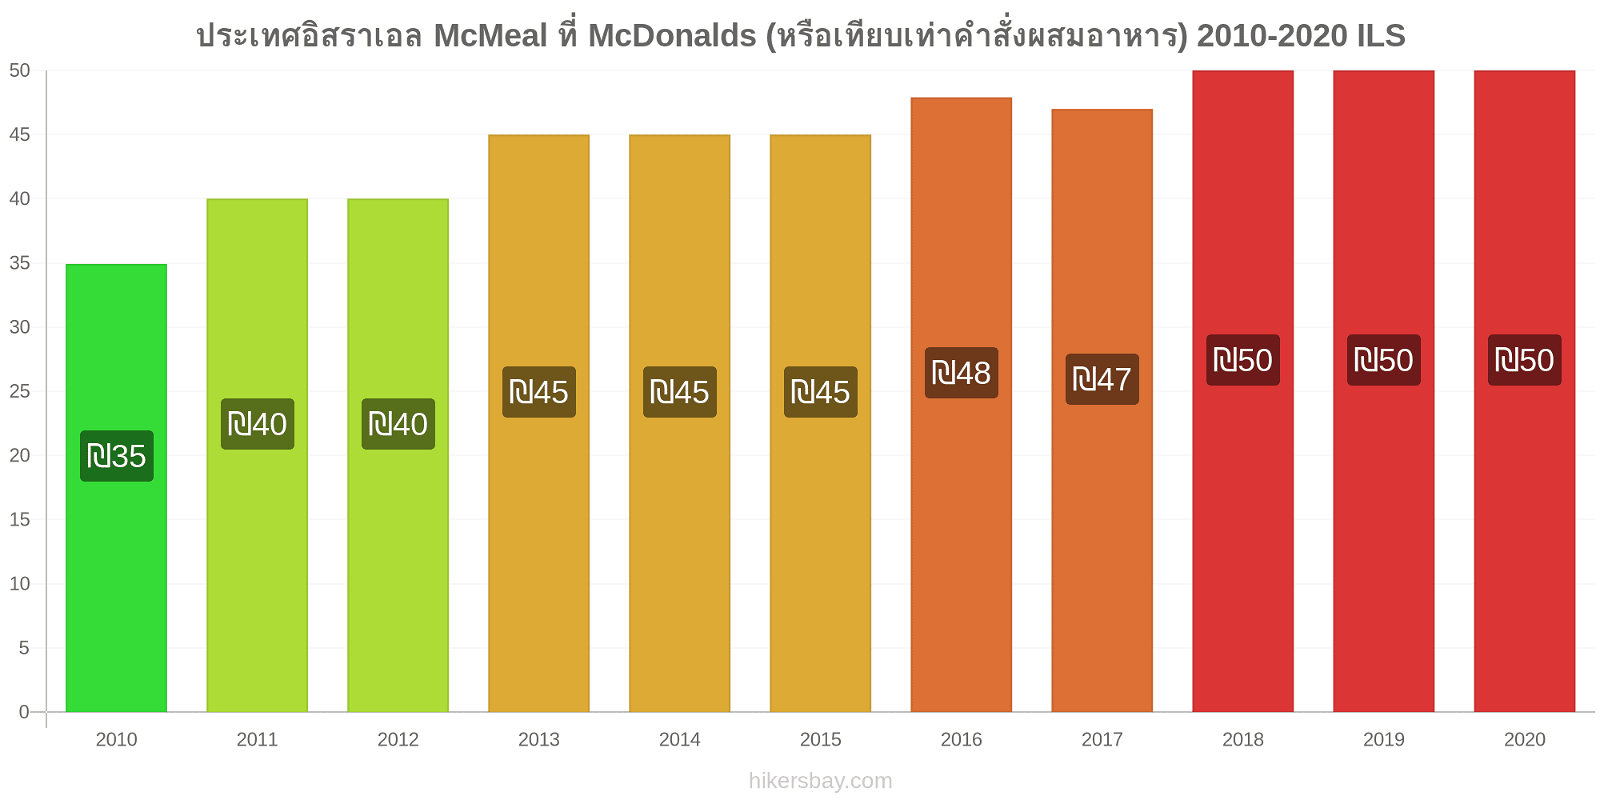 ประเทศอิสราเอล การเปลี่ยนแปลงราคา McMeal ที่ McDonalds (หรือเทียบเท่าคำสั่งผสมอาหาร) hikersbay.com